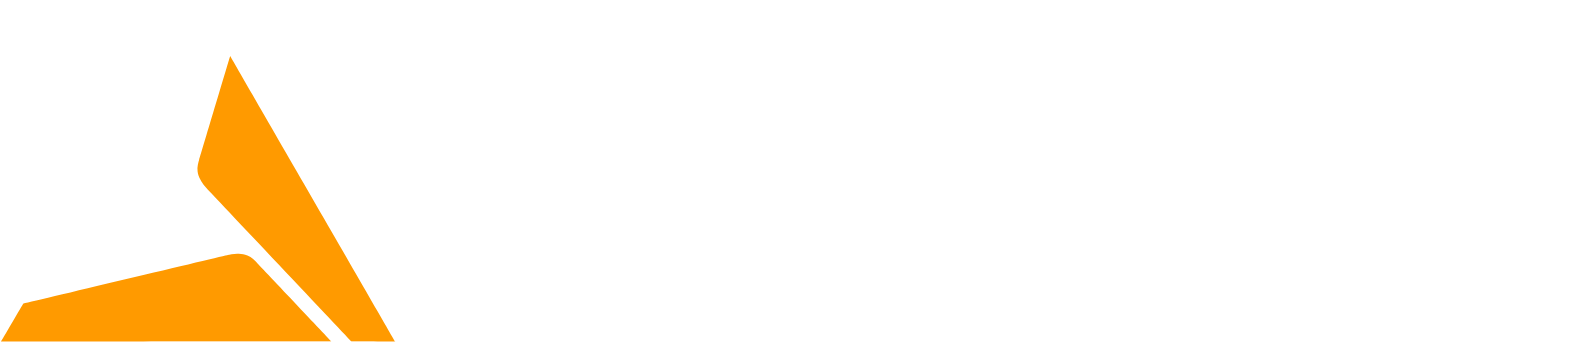 Polymetal logo large for dark backgrounds (transparent PNG)